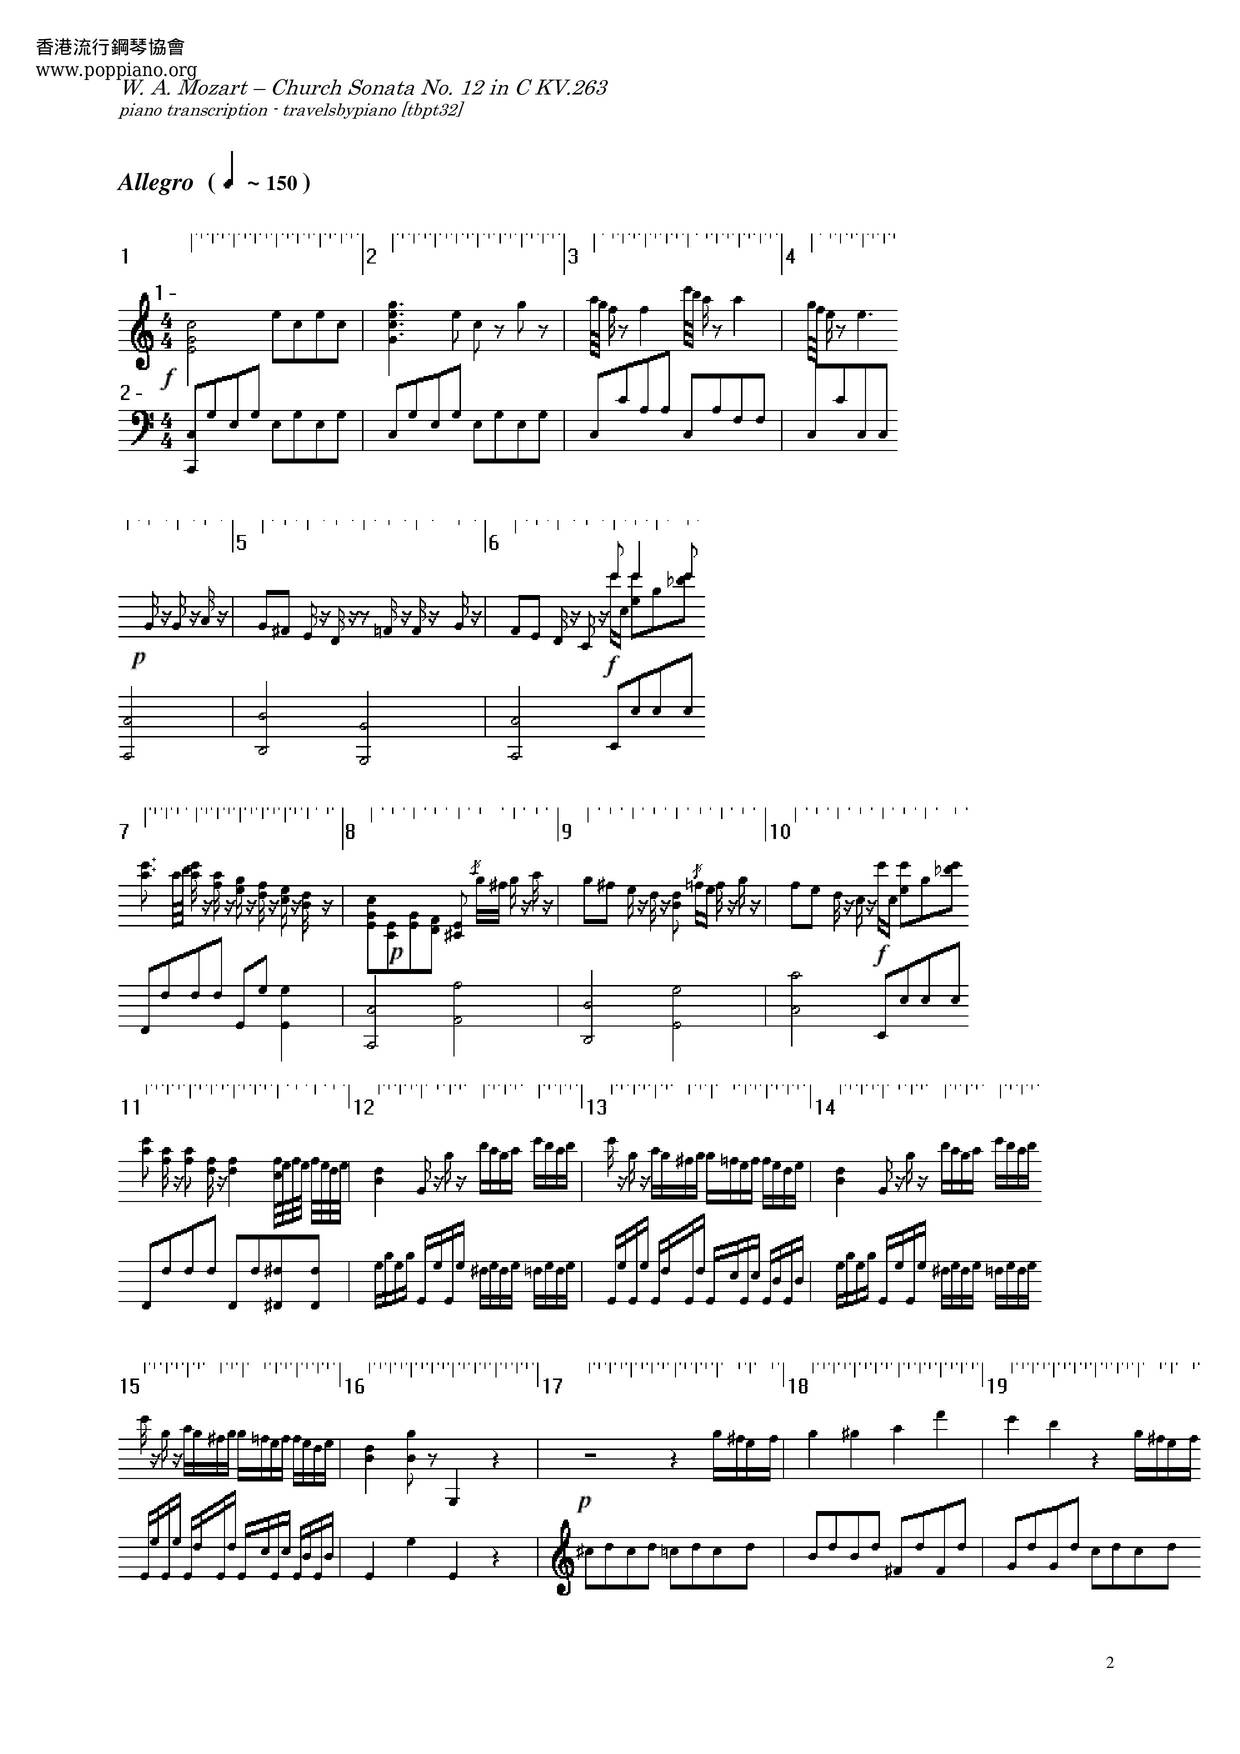 Church Sonata In C Major, K. 263 Score